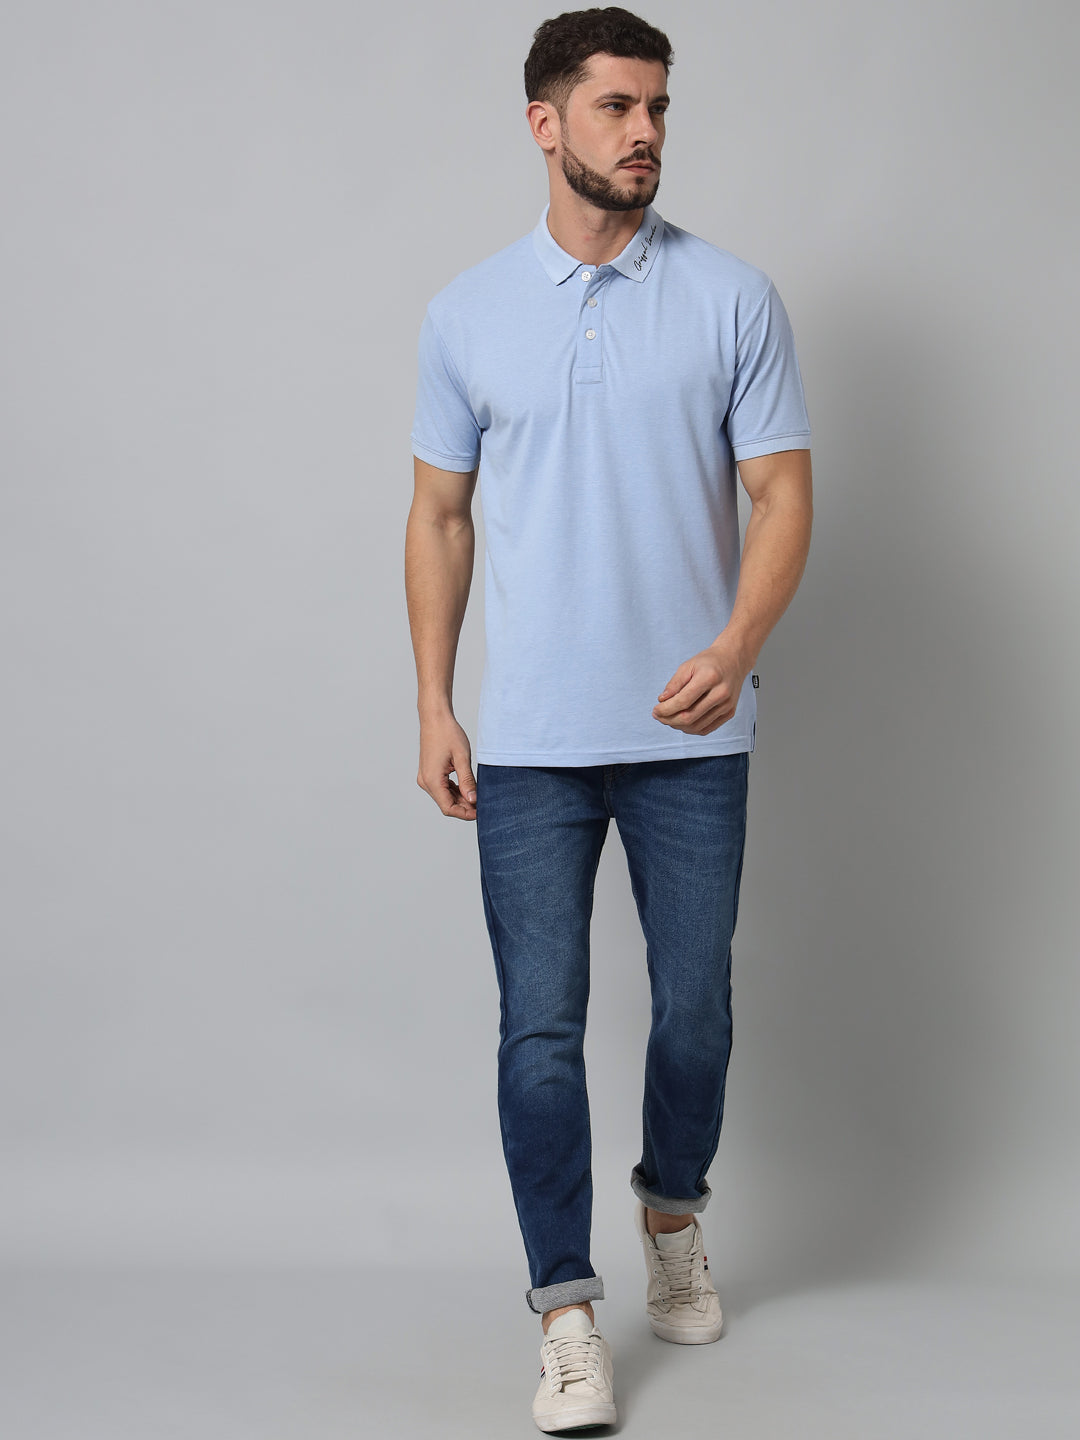 GRIFFEL Men's Sky Cotton Polo T-shirt - griffel